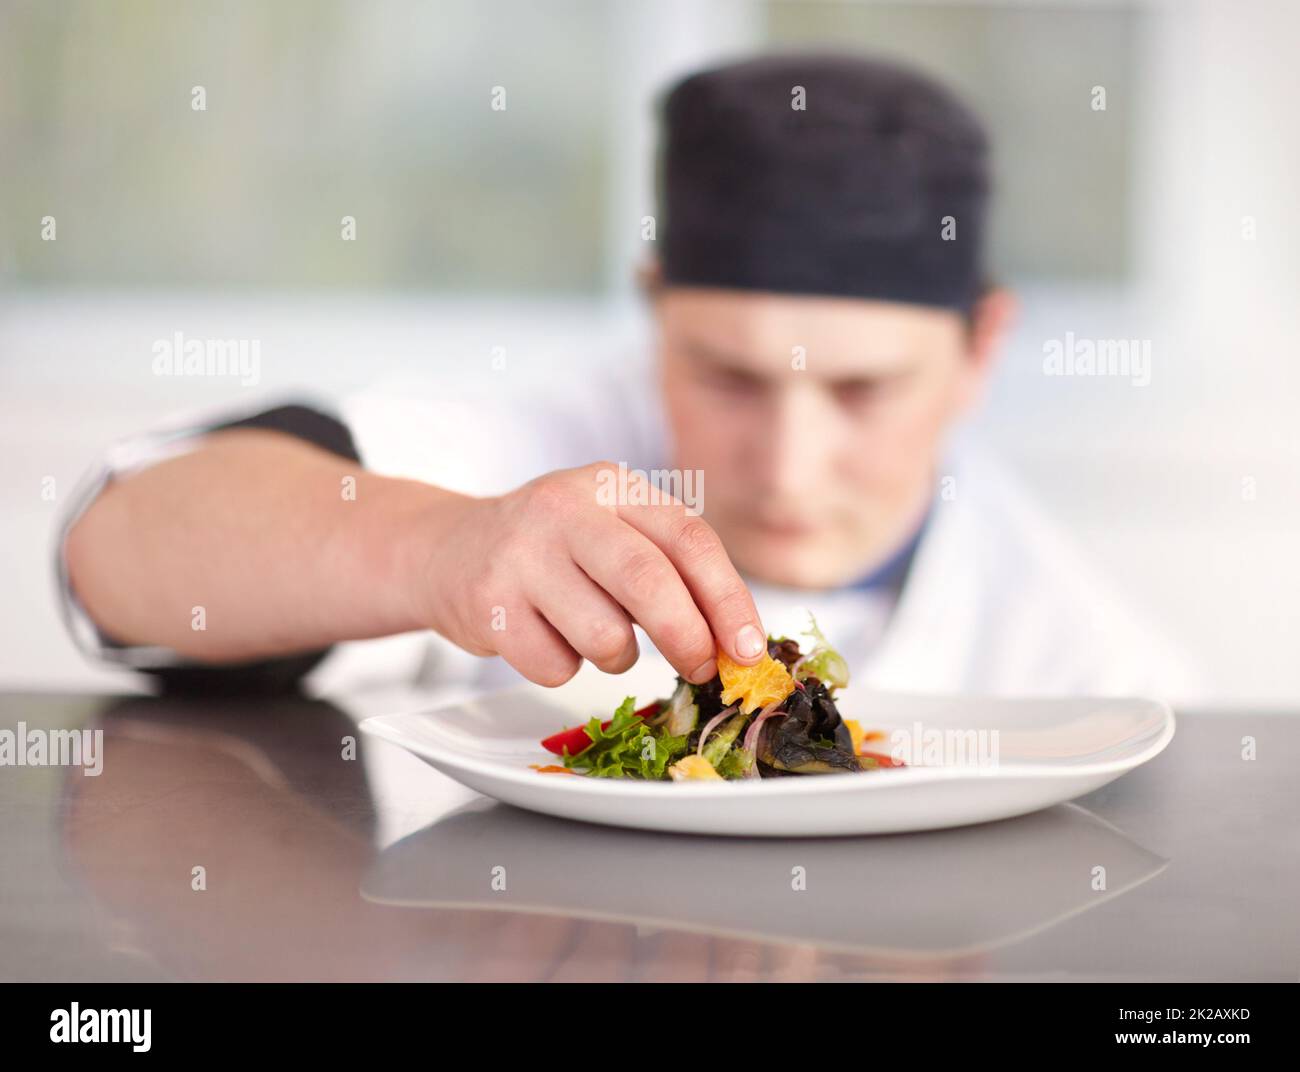 Ich tue alles perfekt. Der junge Küchenchef bringt die letzten Feinheiten zu seinem hervorragend zubereiteten Gericht. Stockfoto